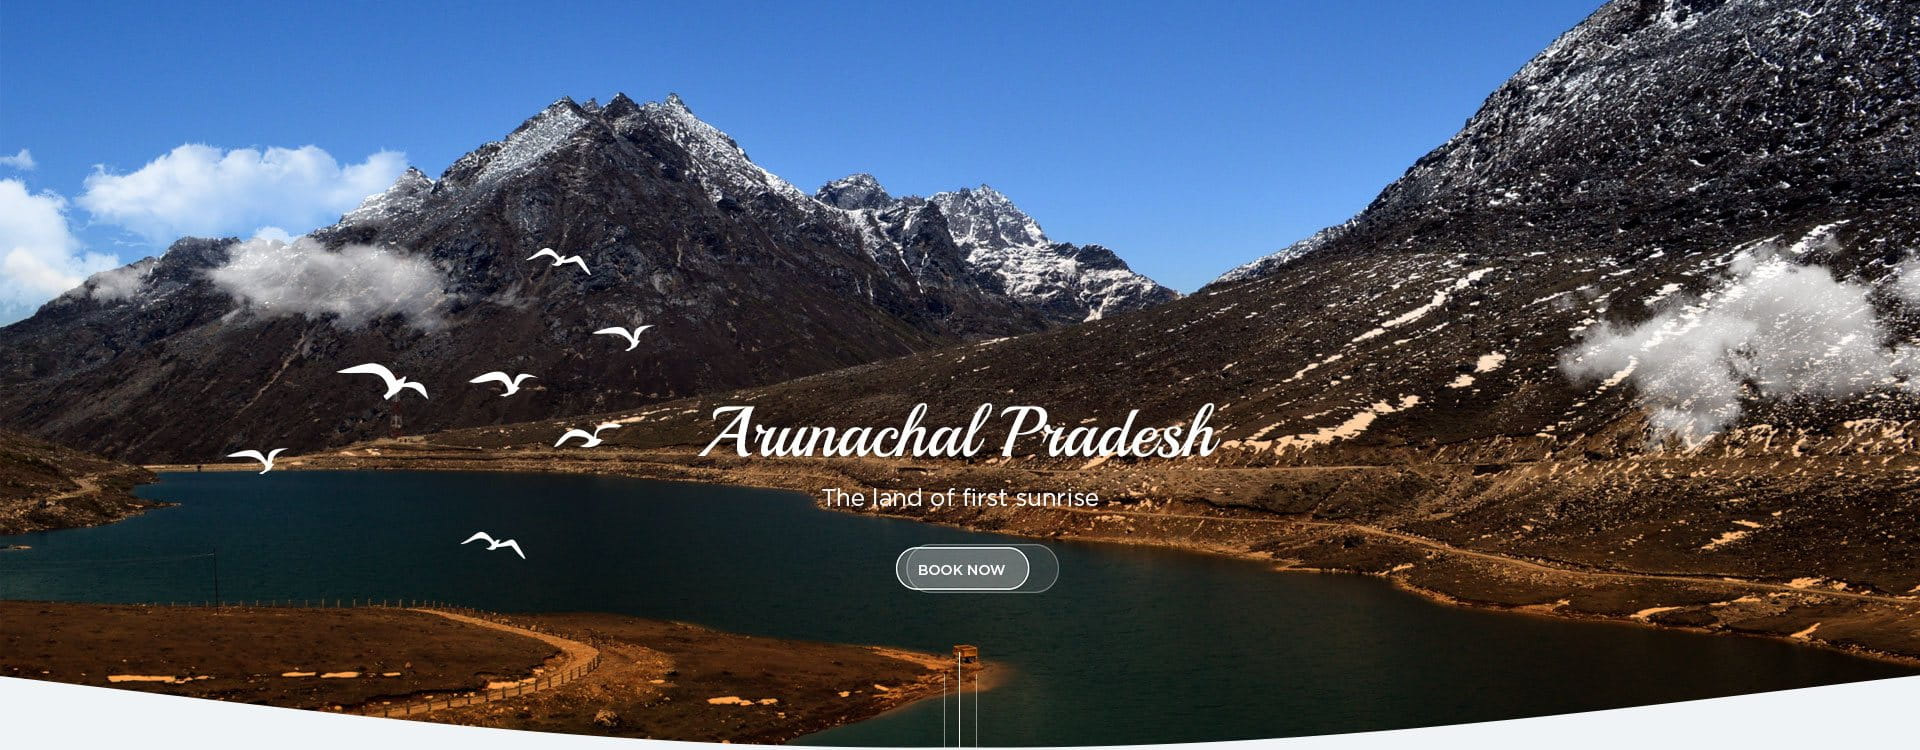 Arunachal Pradesh Tour & Travel Operator - Eastern Meadows Tour